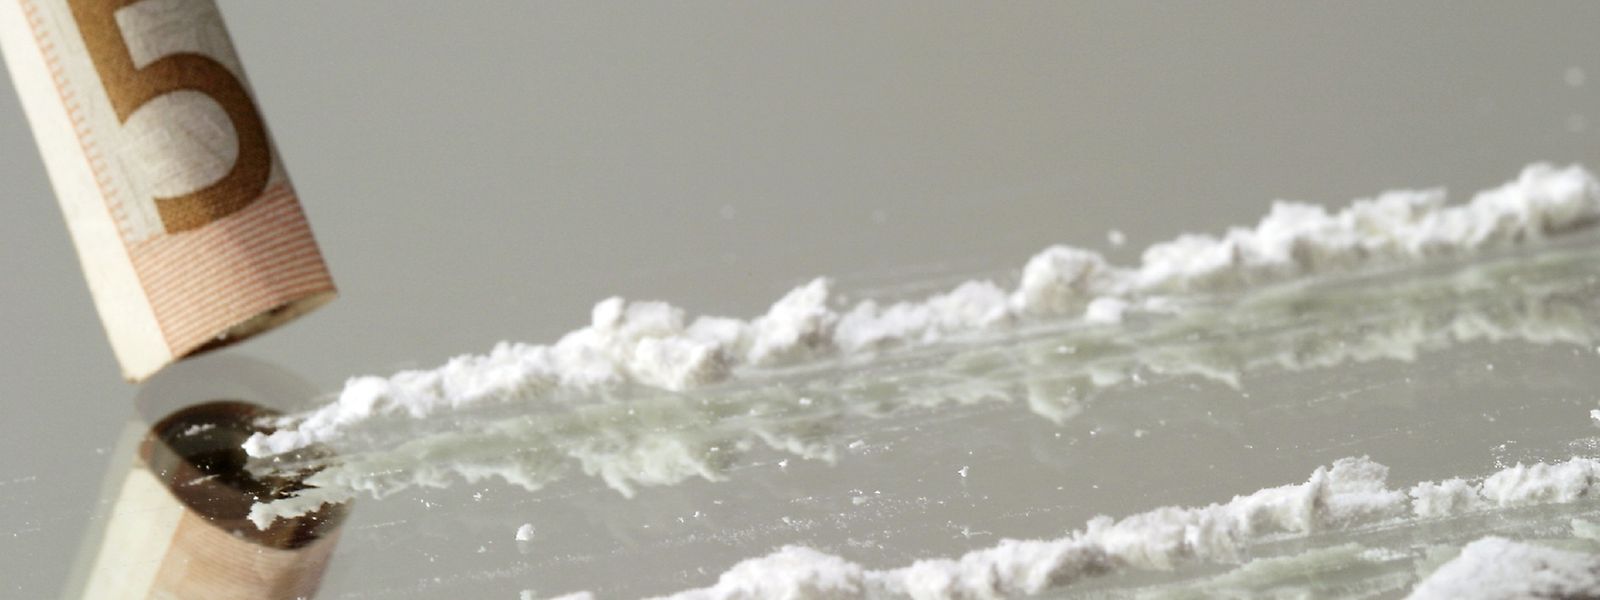 Plus d'un participant à l'enquête sur cinq a consommé de la cocaïne au cours de l'année écoulée. 